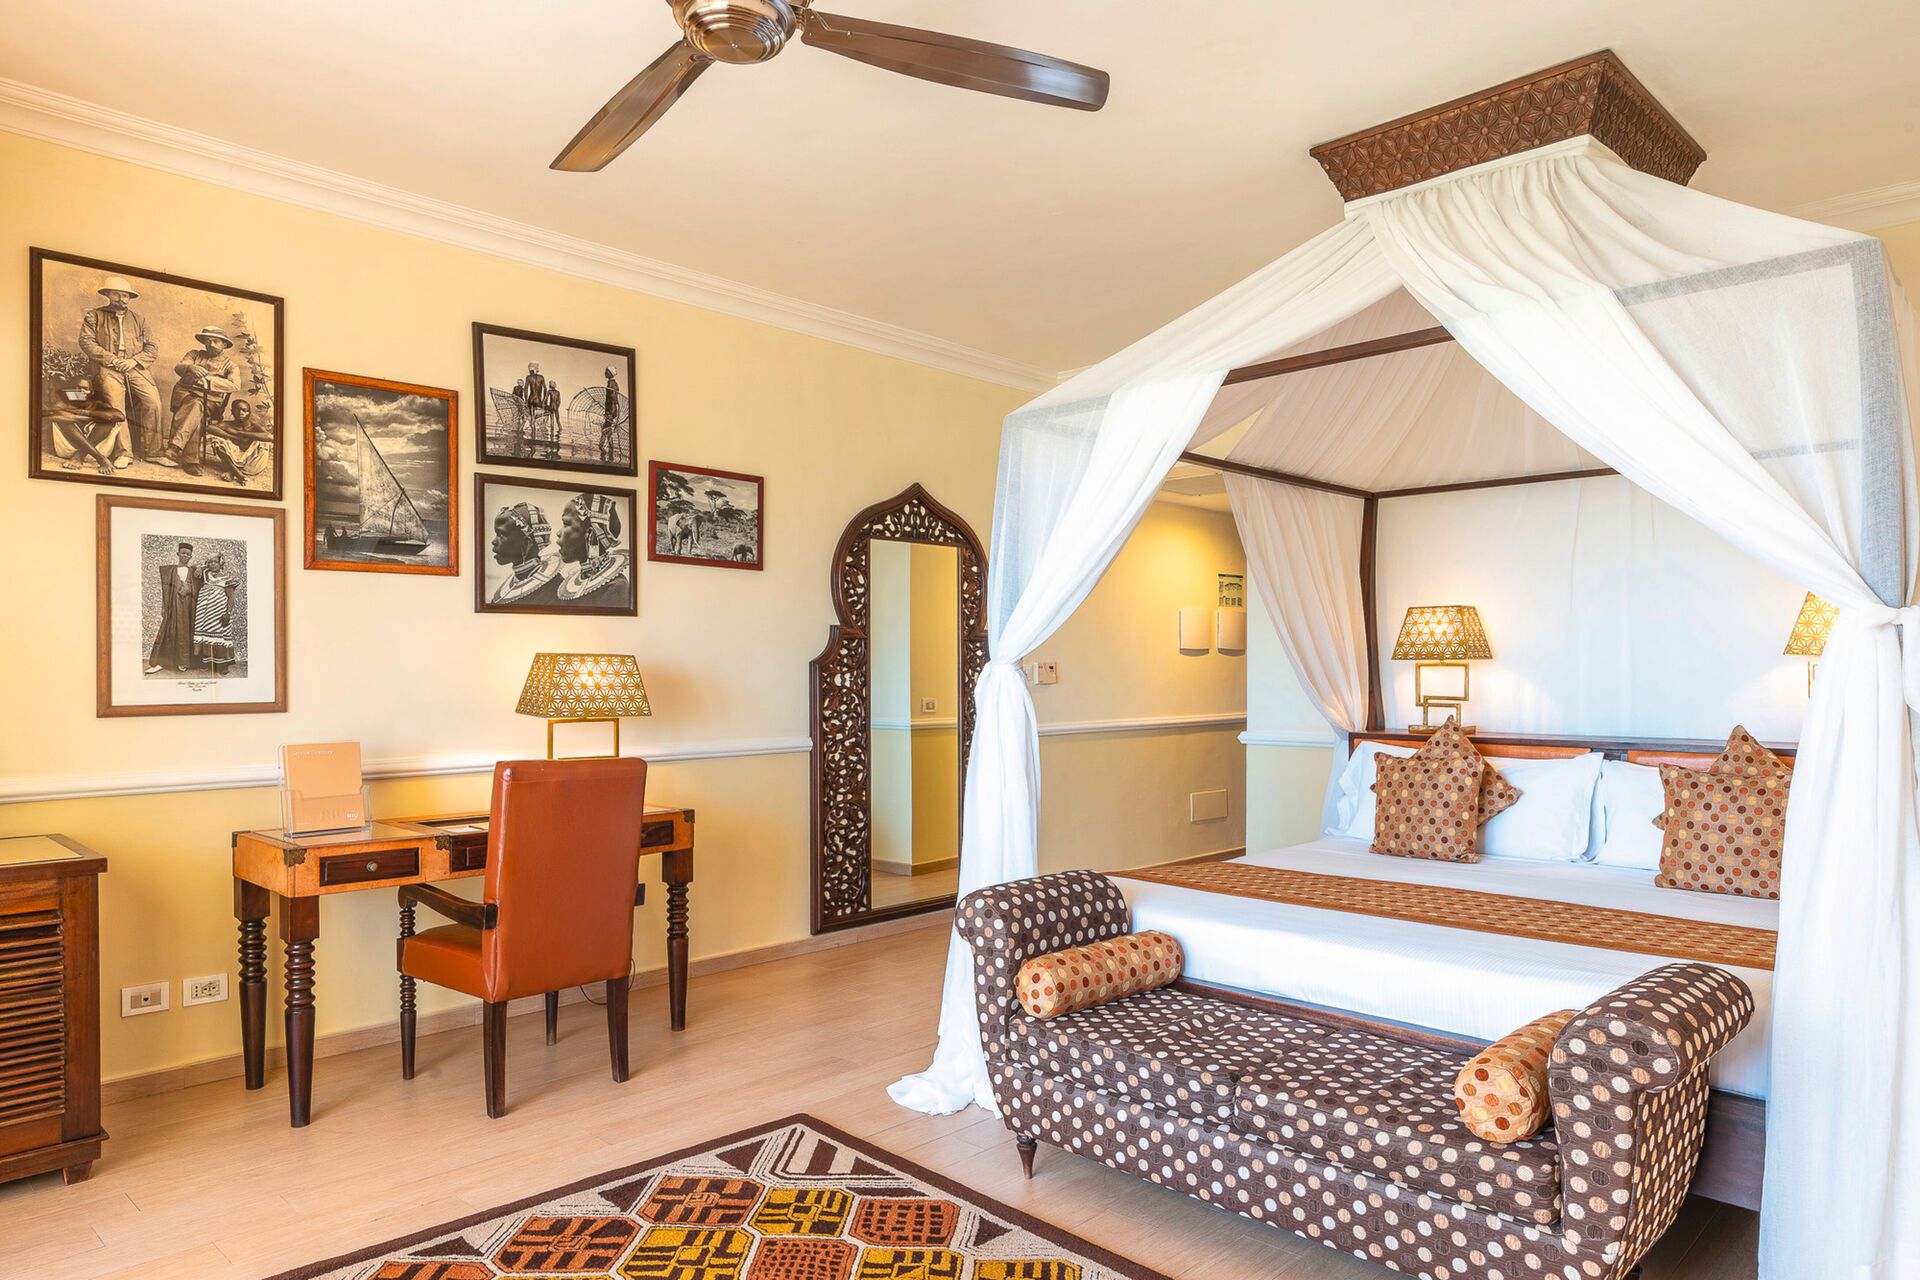 Tanzanie - Zanzibar - Hotel Riu Palace Zanzibar 5* - Adult Only transfert privé inclus